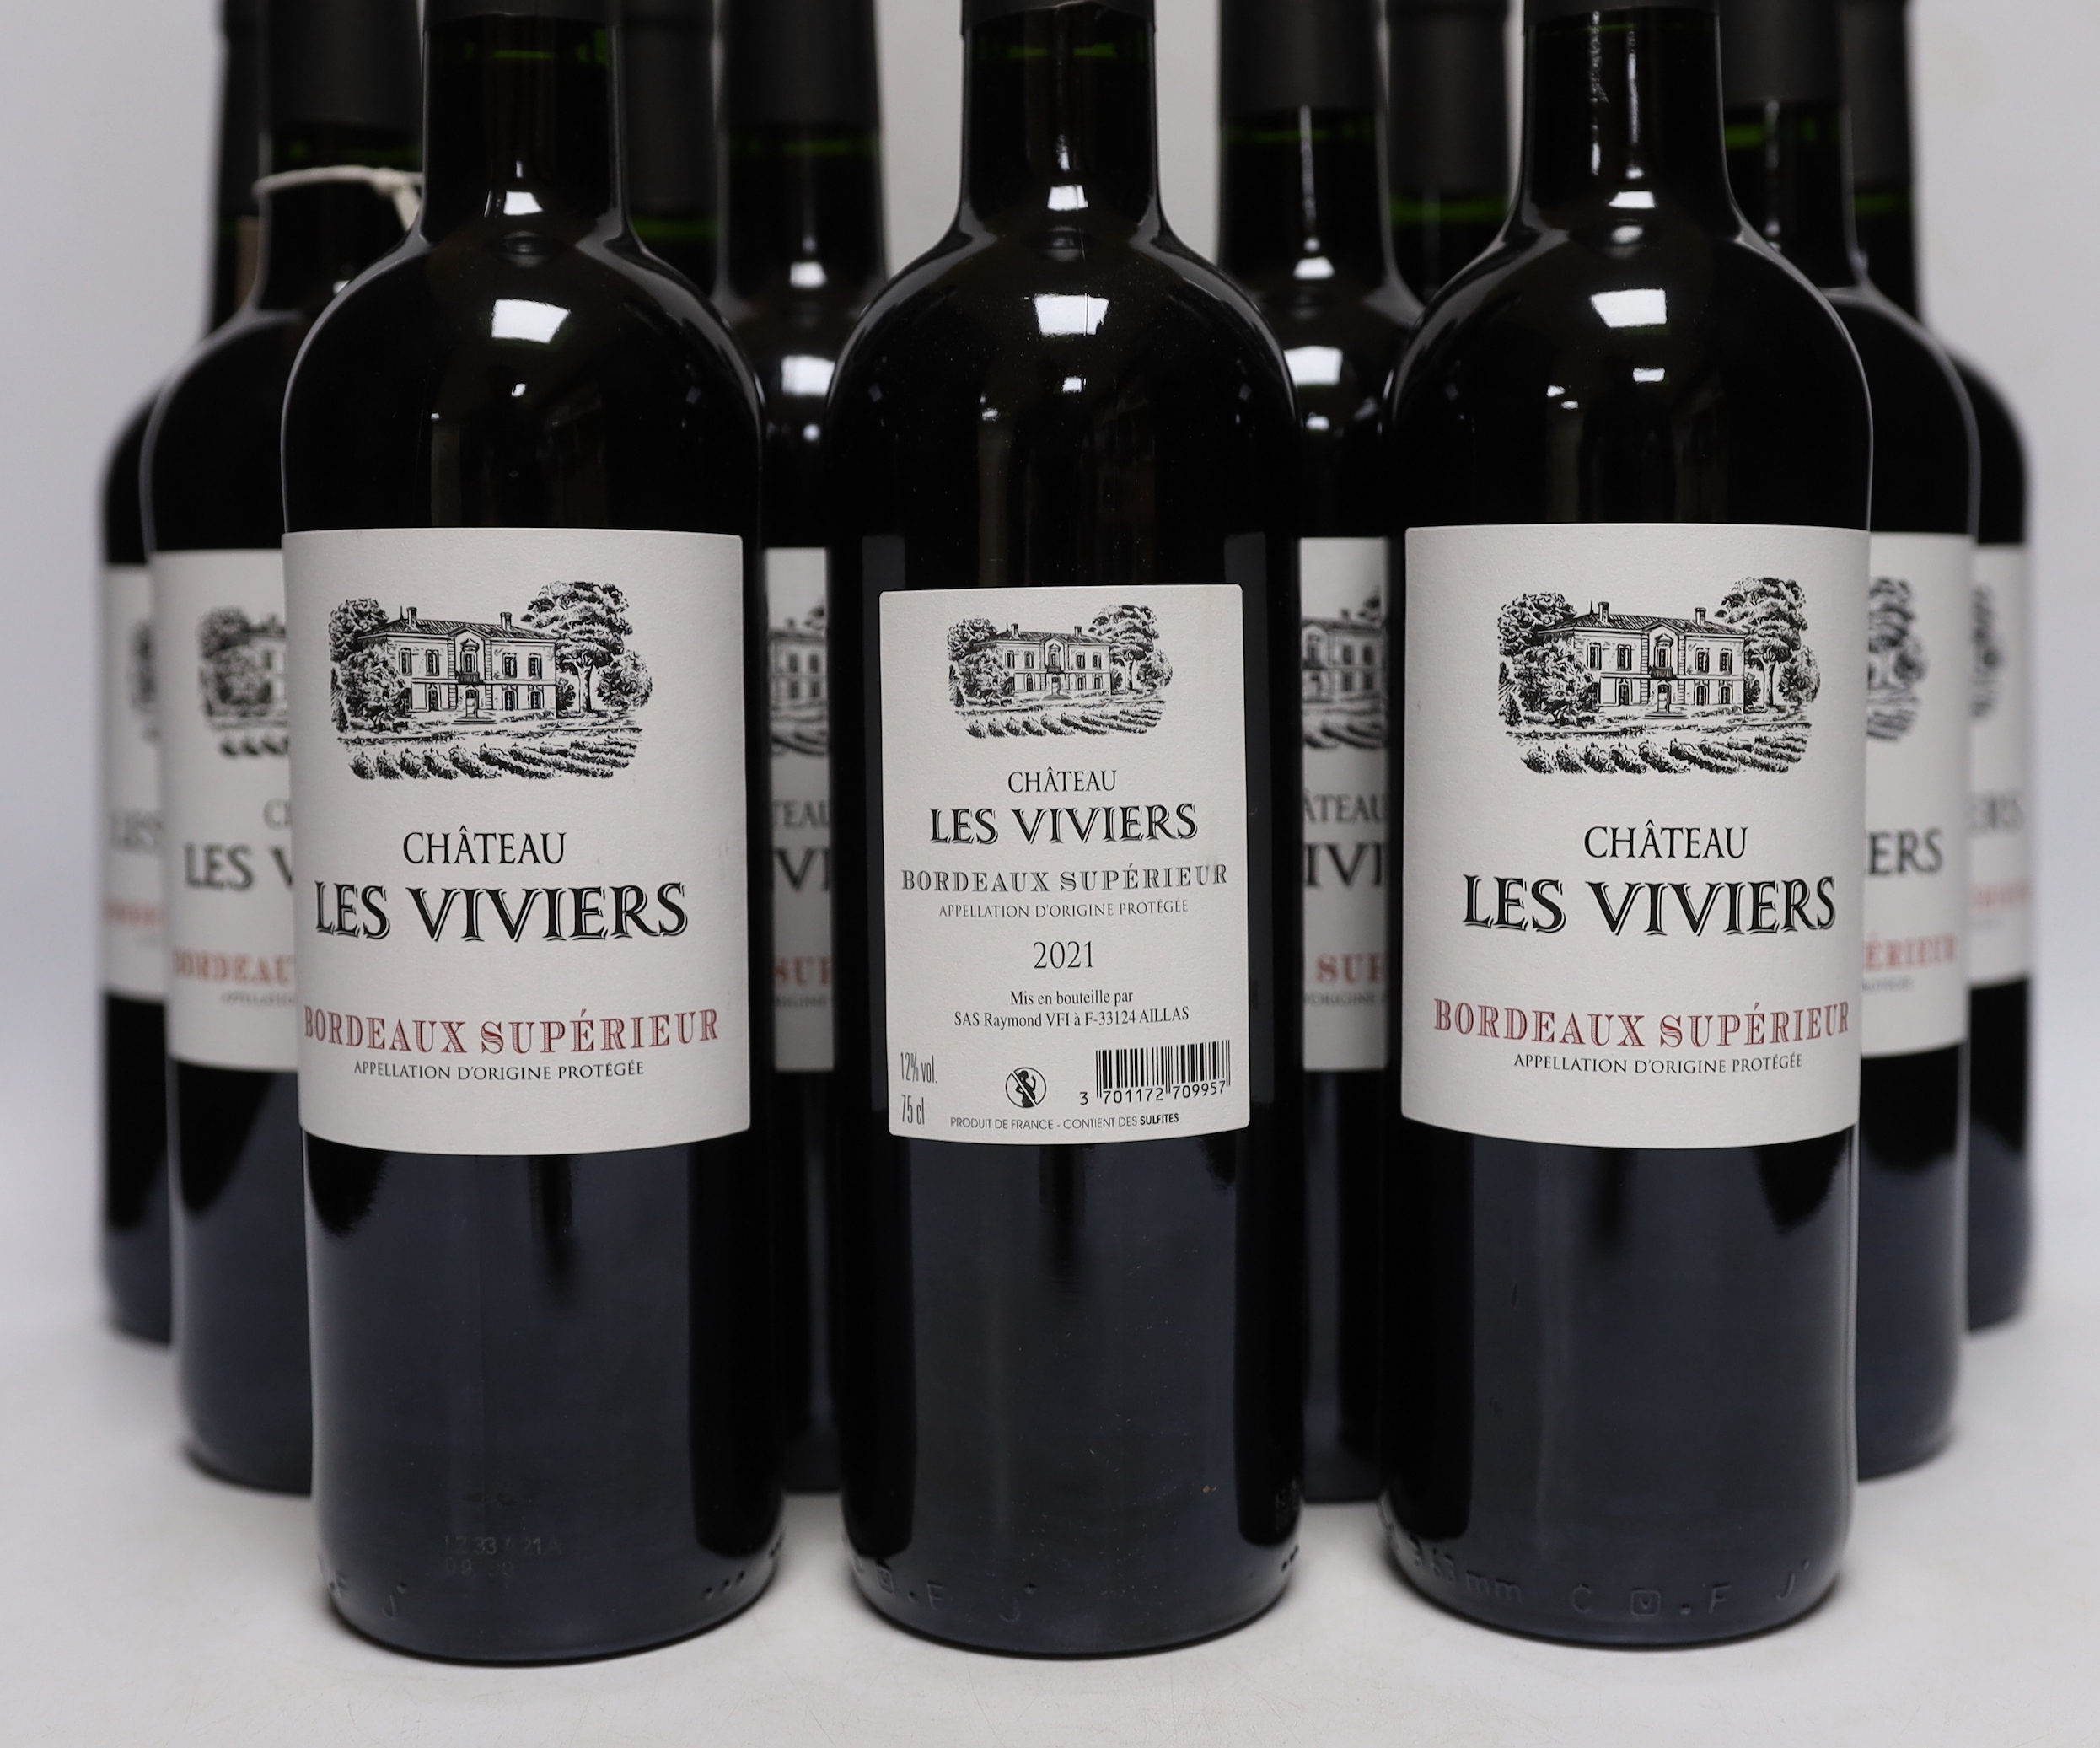 Twelve bottles of Chateau Les Vivers 2021